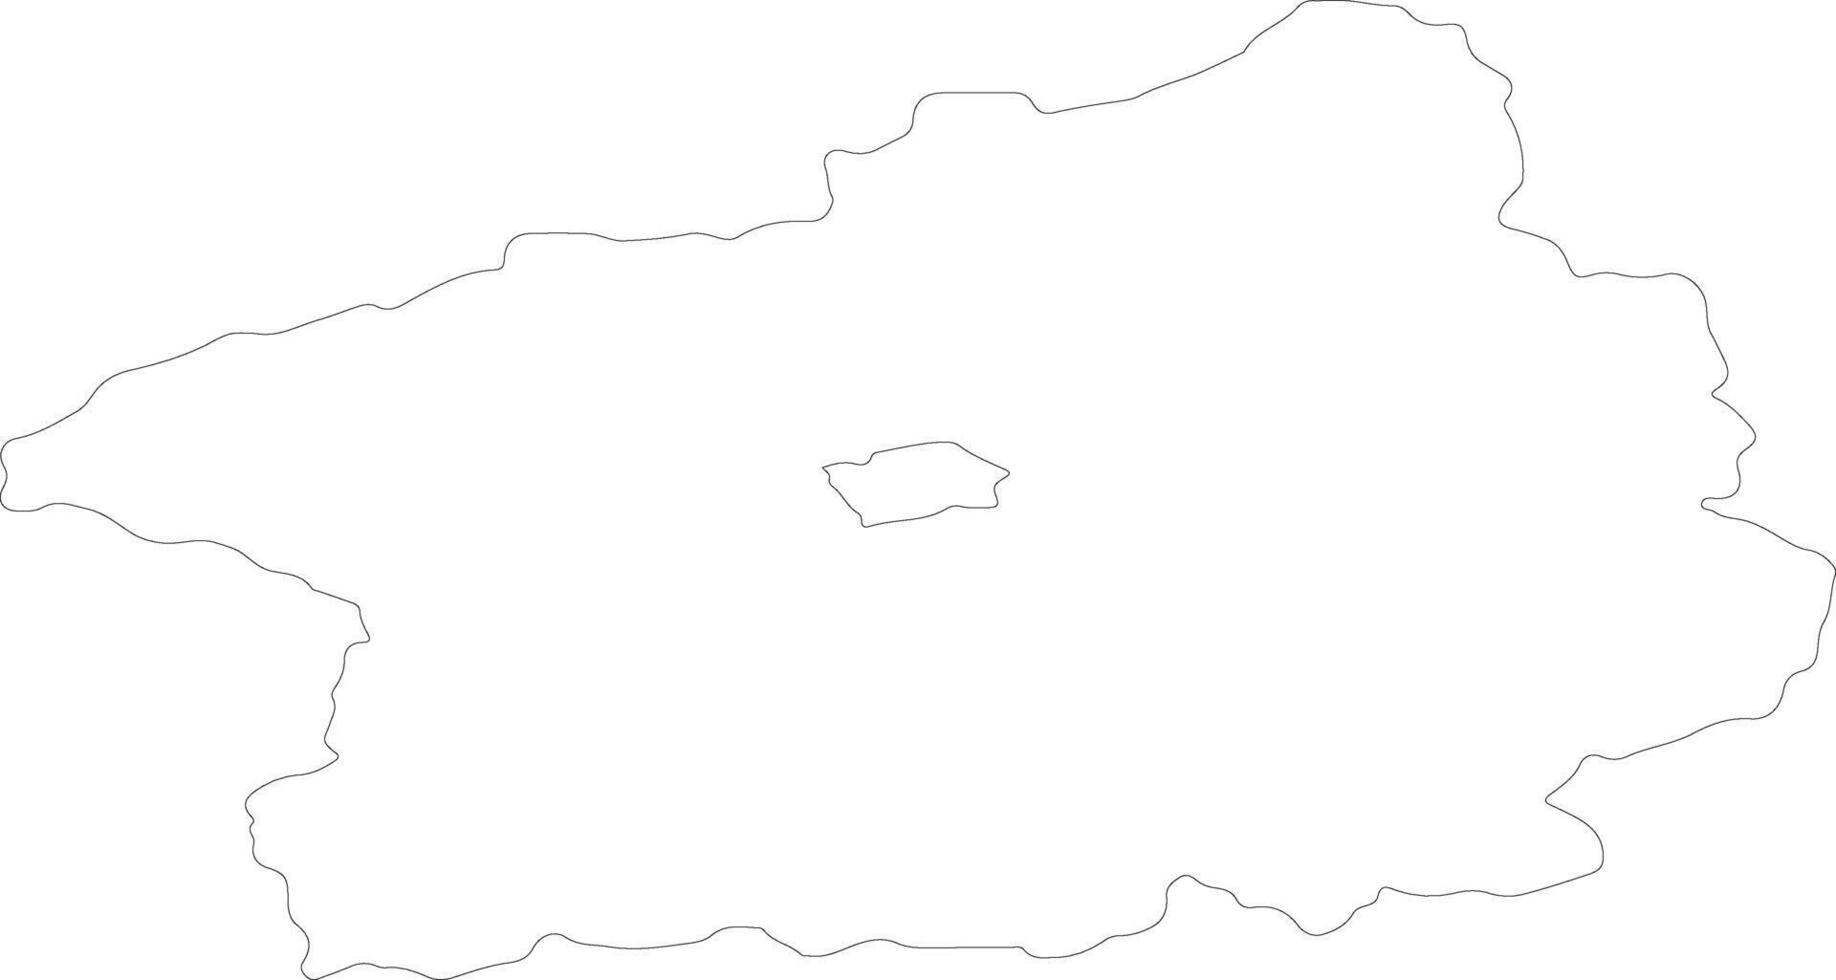 stredocesky tchèque république contour carte vecteur